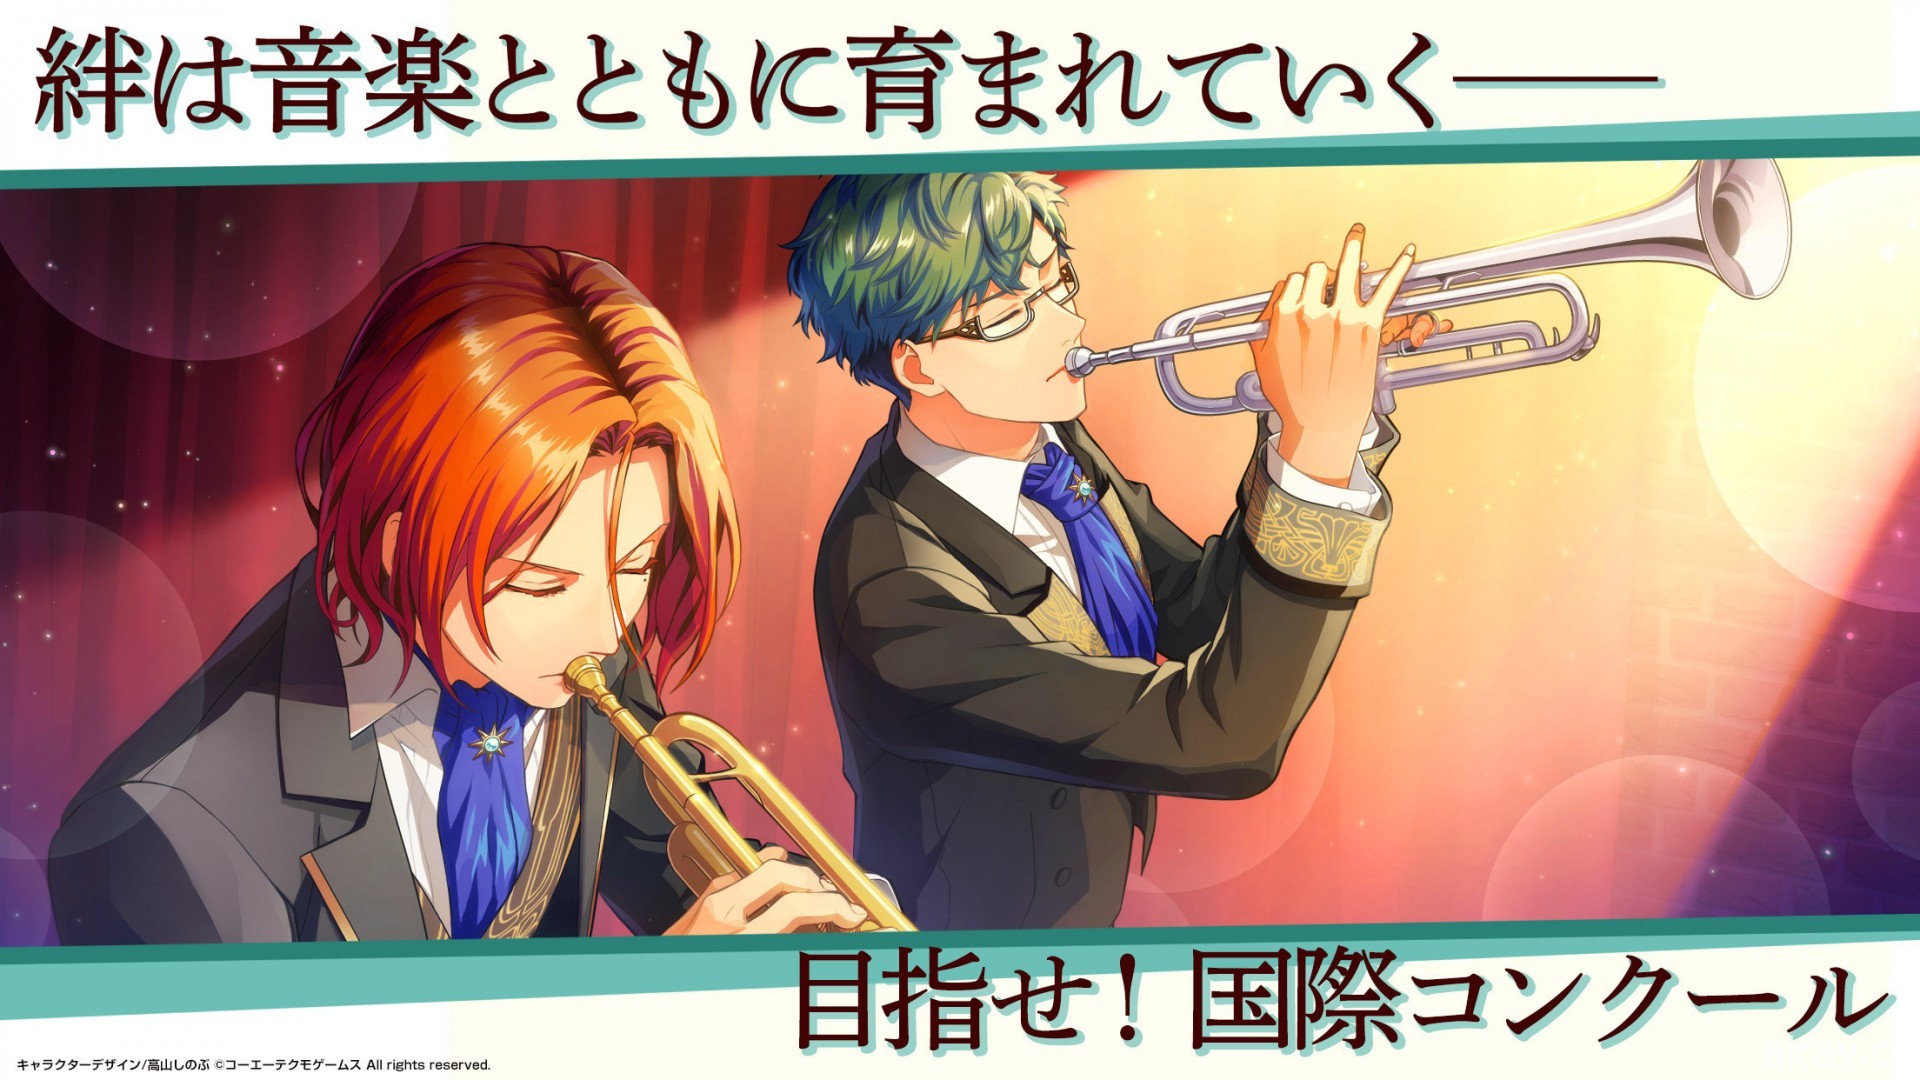 《金色琴弦》系列新作《星光交響曲》於日本推出 前往日本各地舉辦管弦樂演奏會